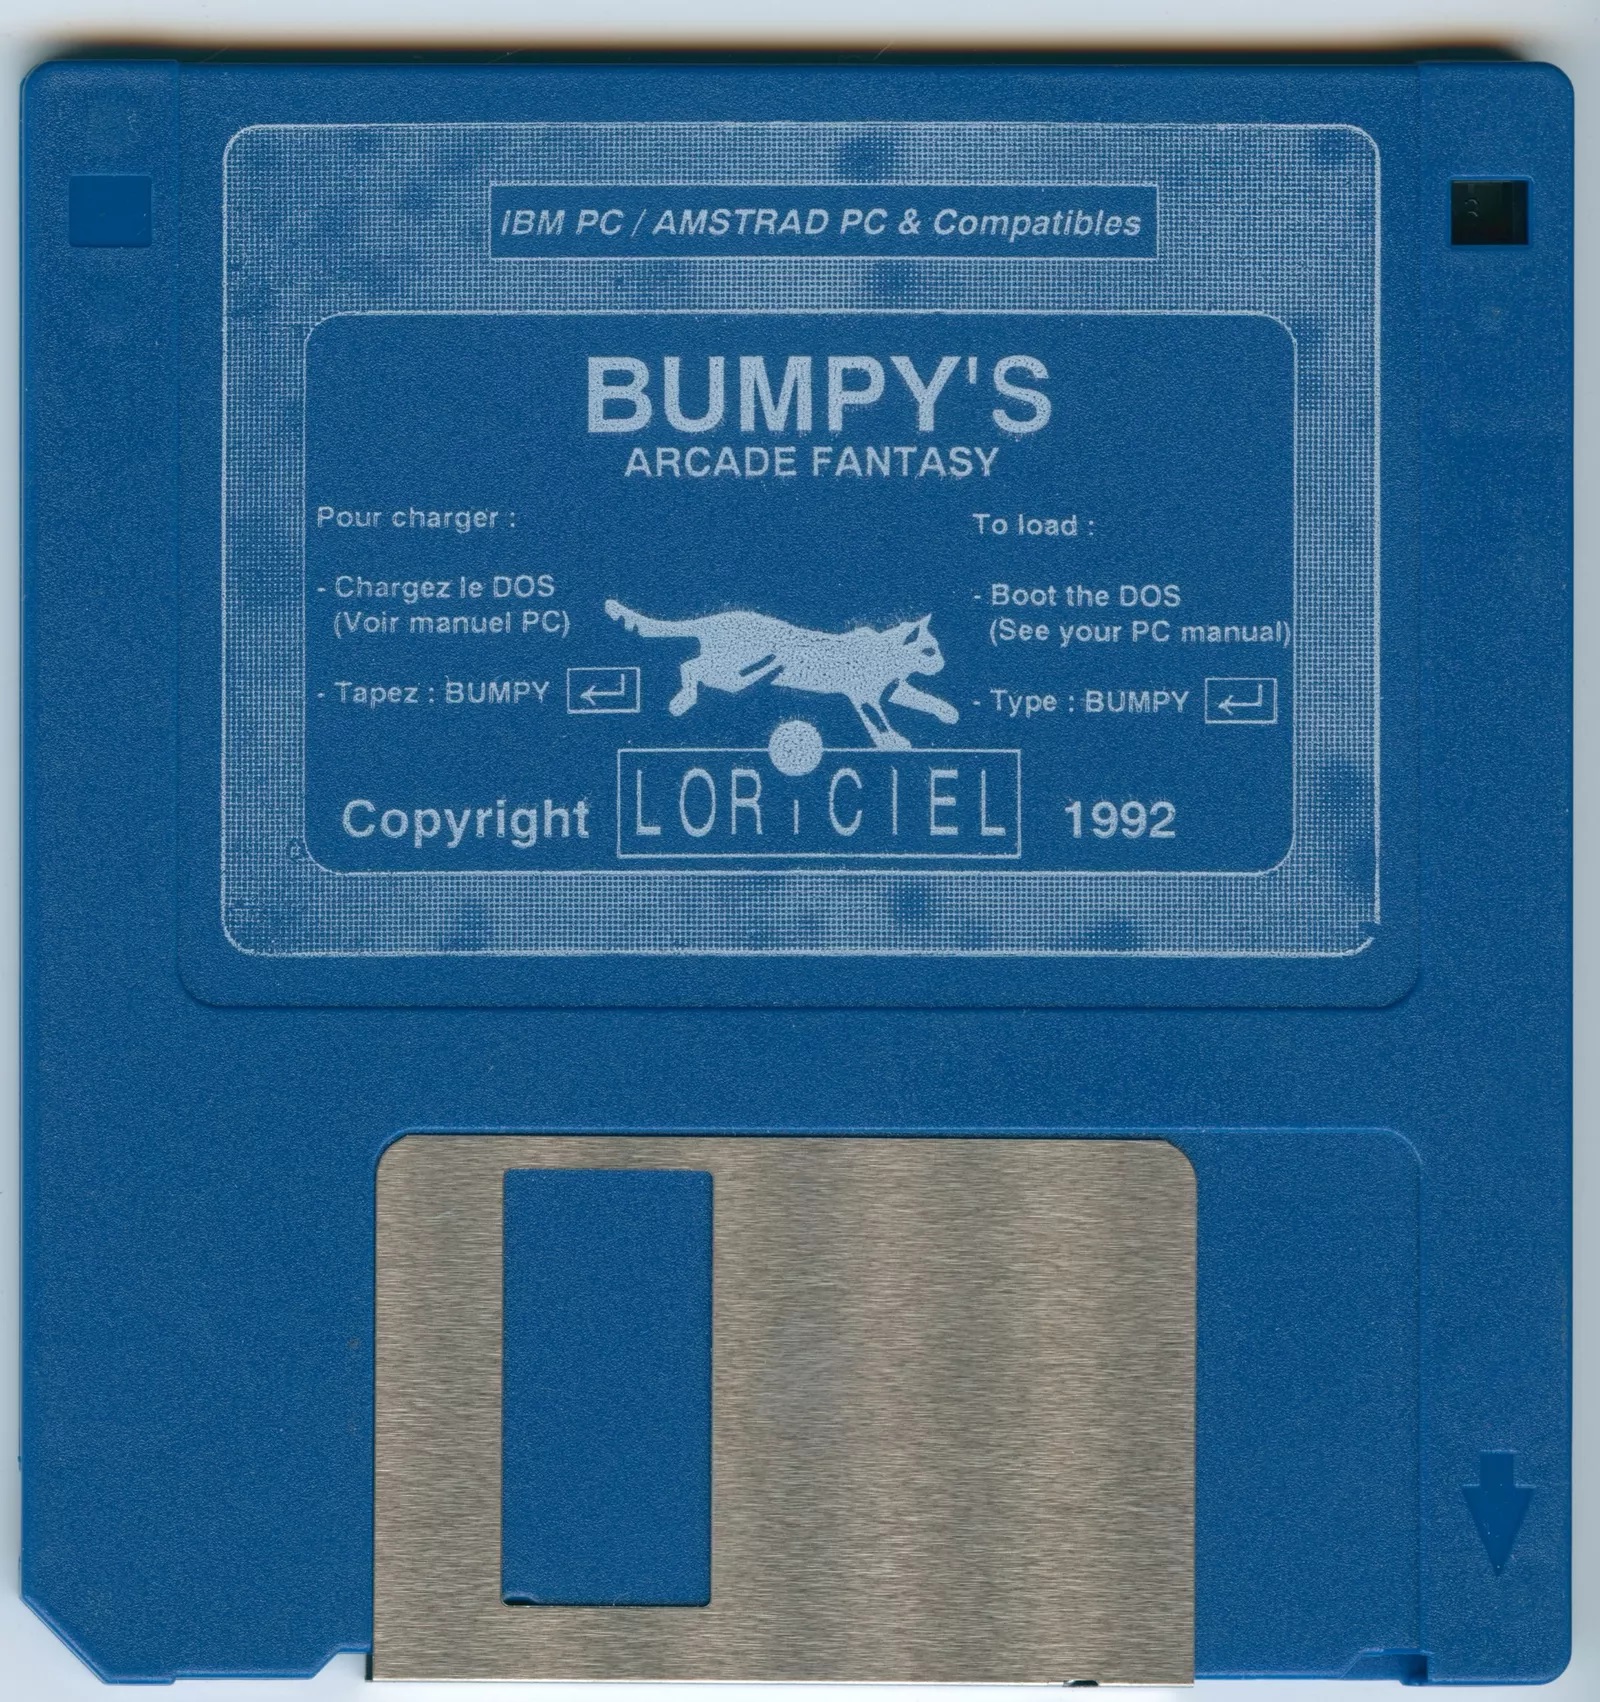 4. Bumpy's Arcade Fantasy (1992).